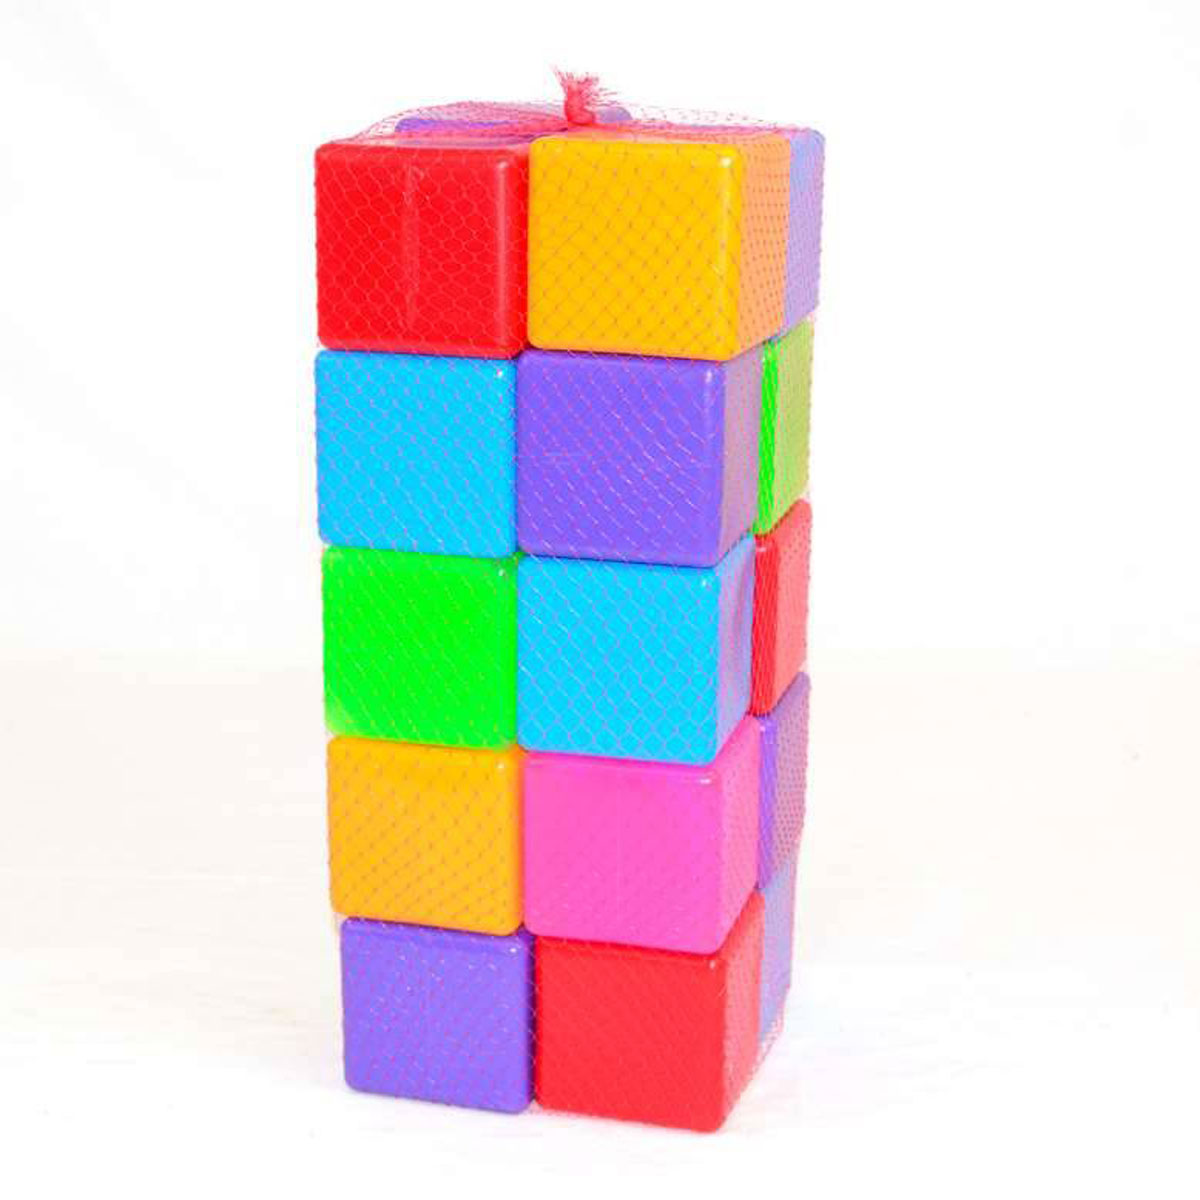 Игрушечные кубики цветные Бамсик